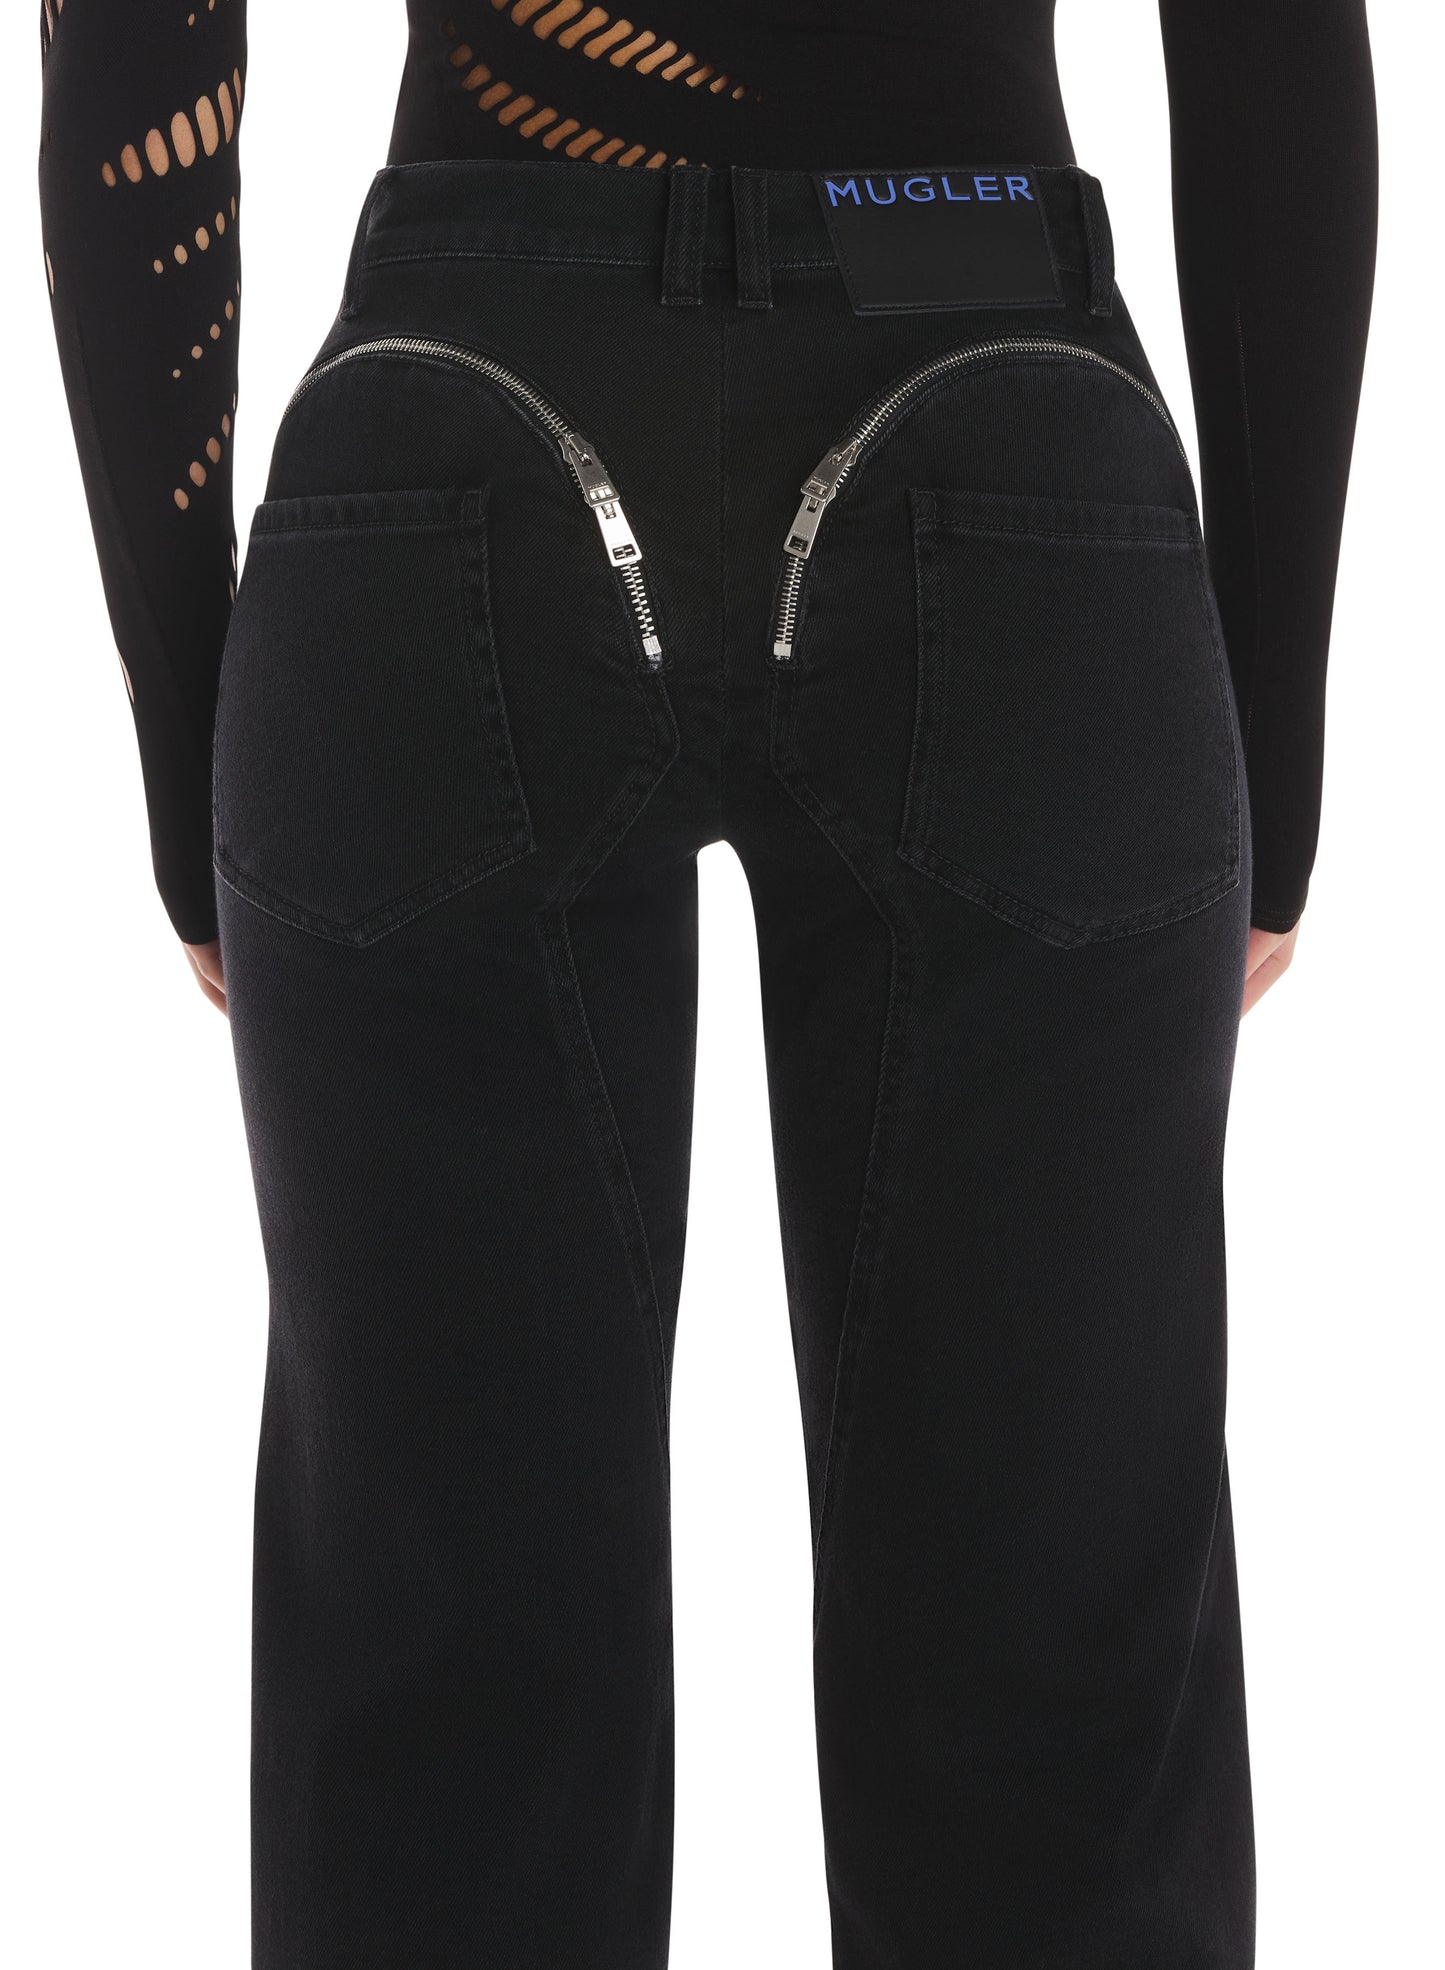 black cuffed zipper jeans